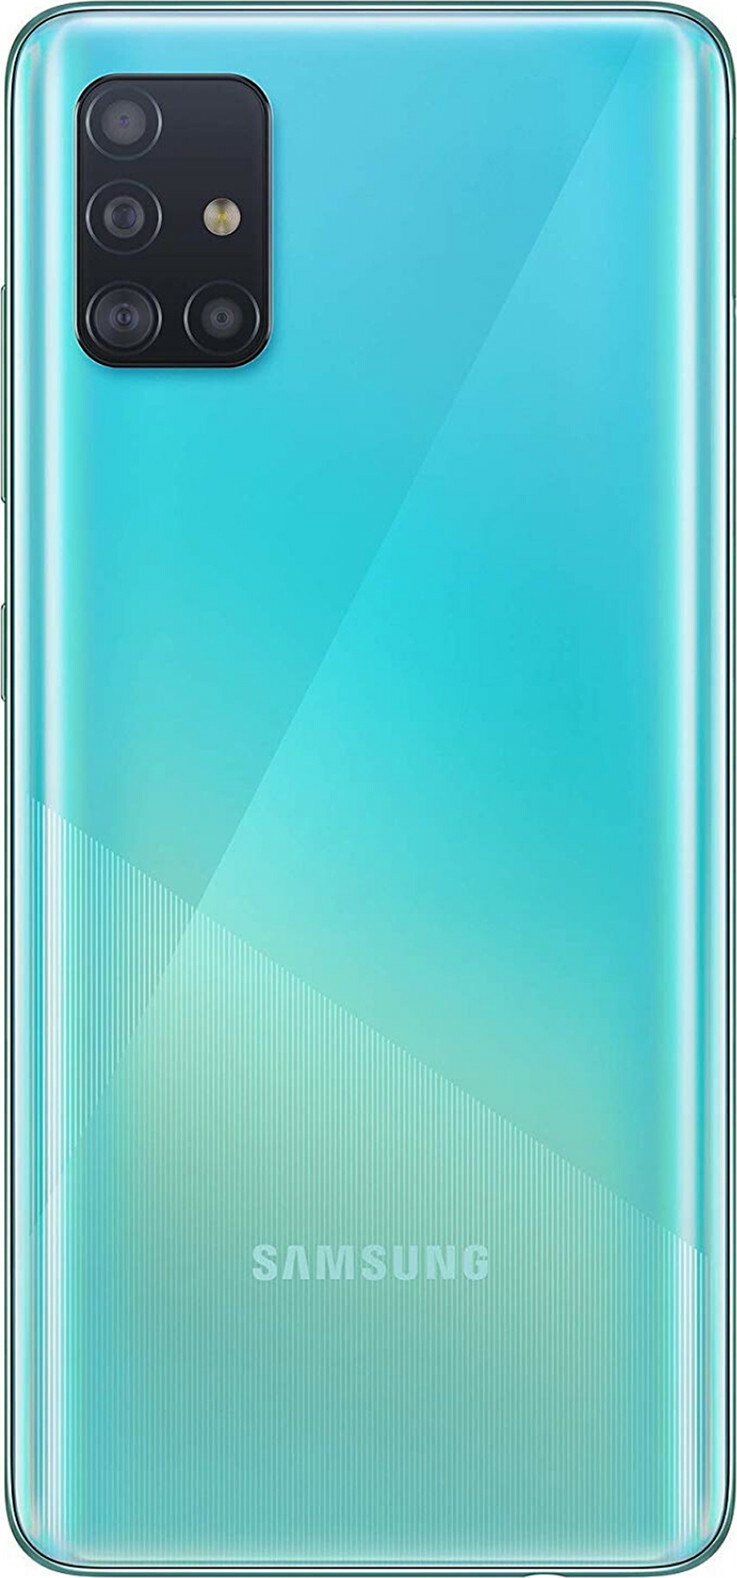 Samsung Galaxy A51 256GB (8GB RAM)